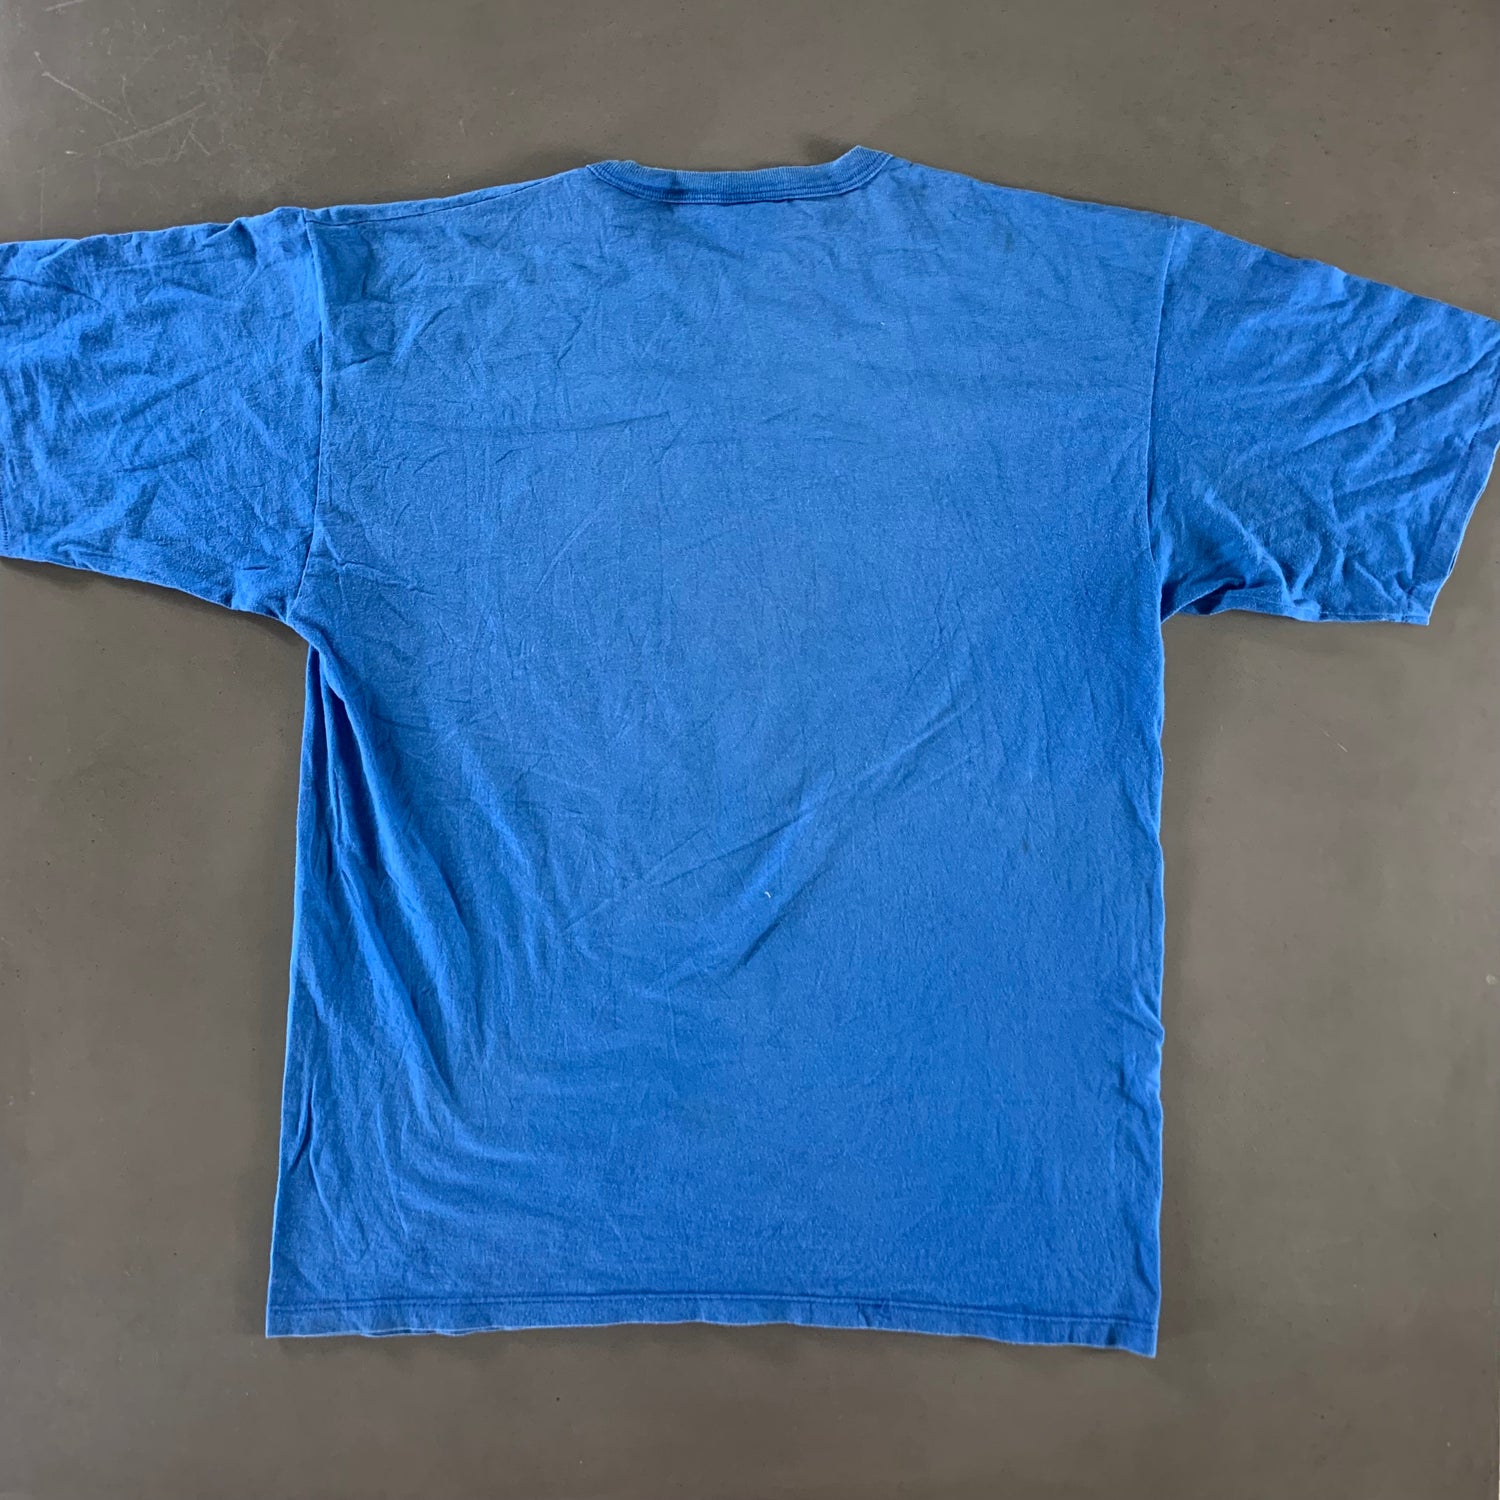 Vintage 1990s Detroit Lions T-shirt size XL